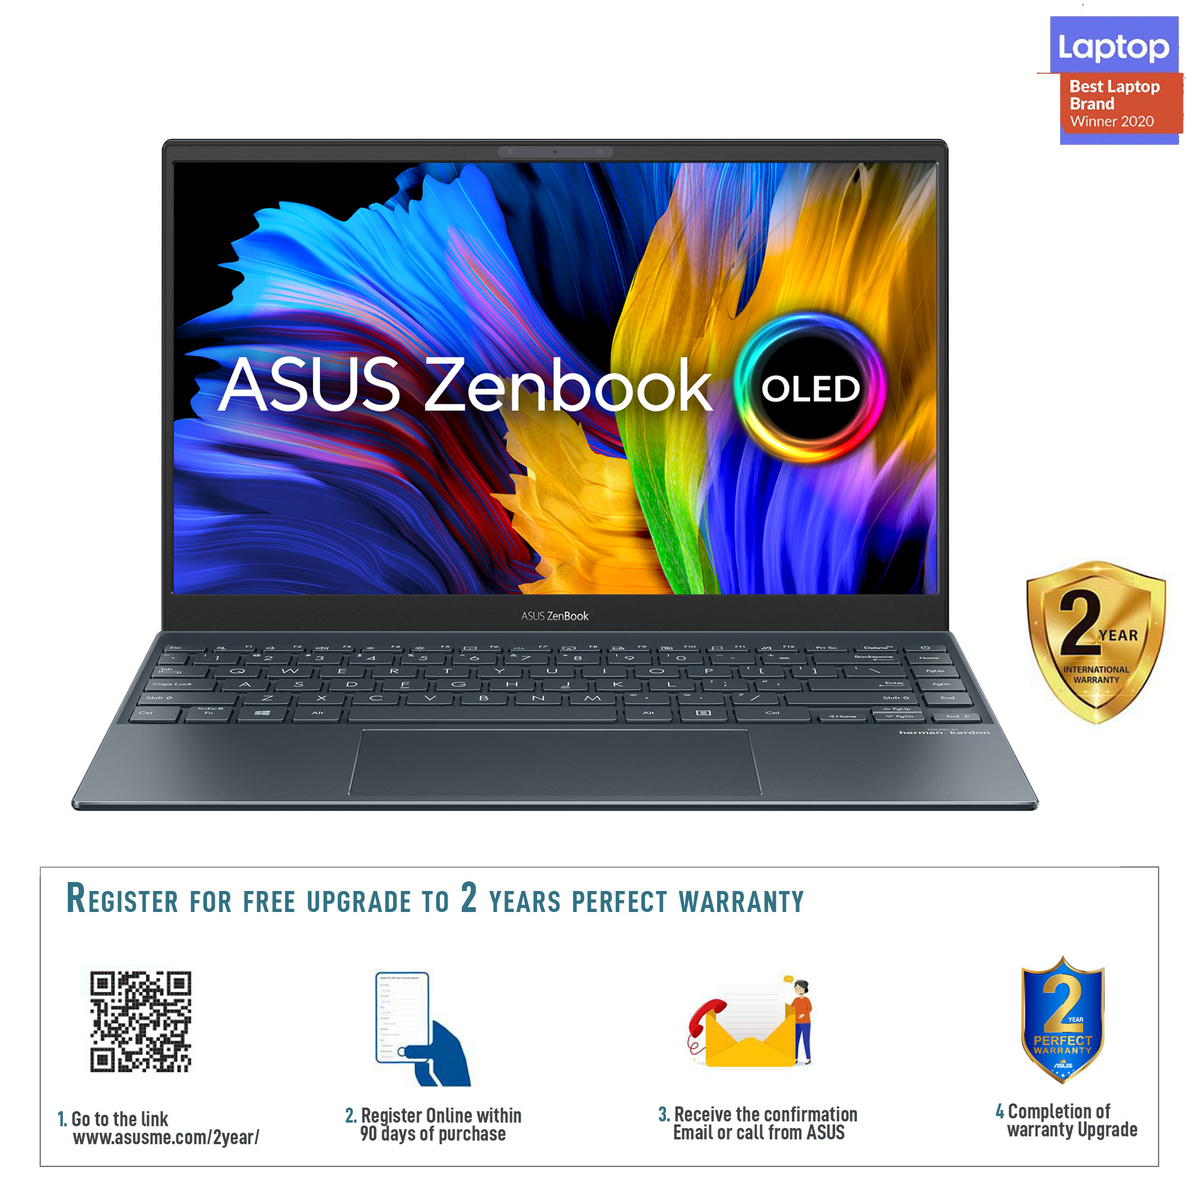 Asus Zenbook 13 OLED UX325EA-OLED001T,Intel Core i7-1165G7 Processor 2.8 GHz,16GB RAM,1TB SSD,13.3" OLED FHD,Windows10,Grey